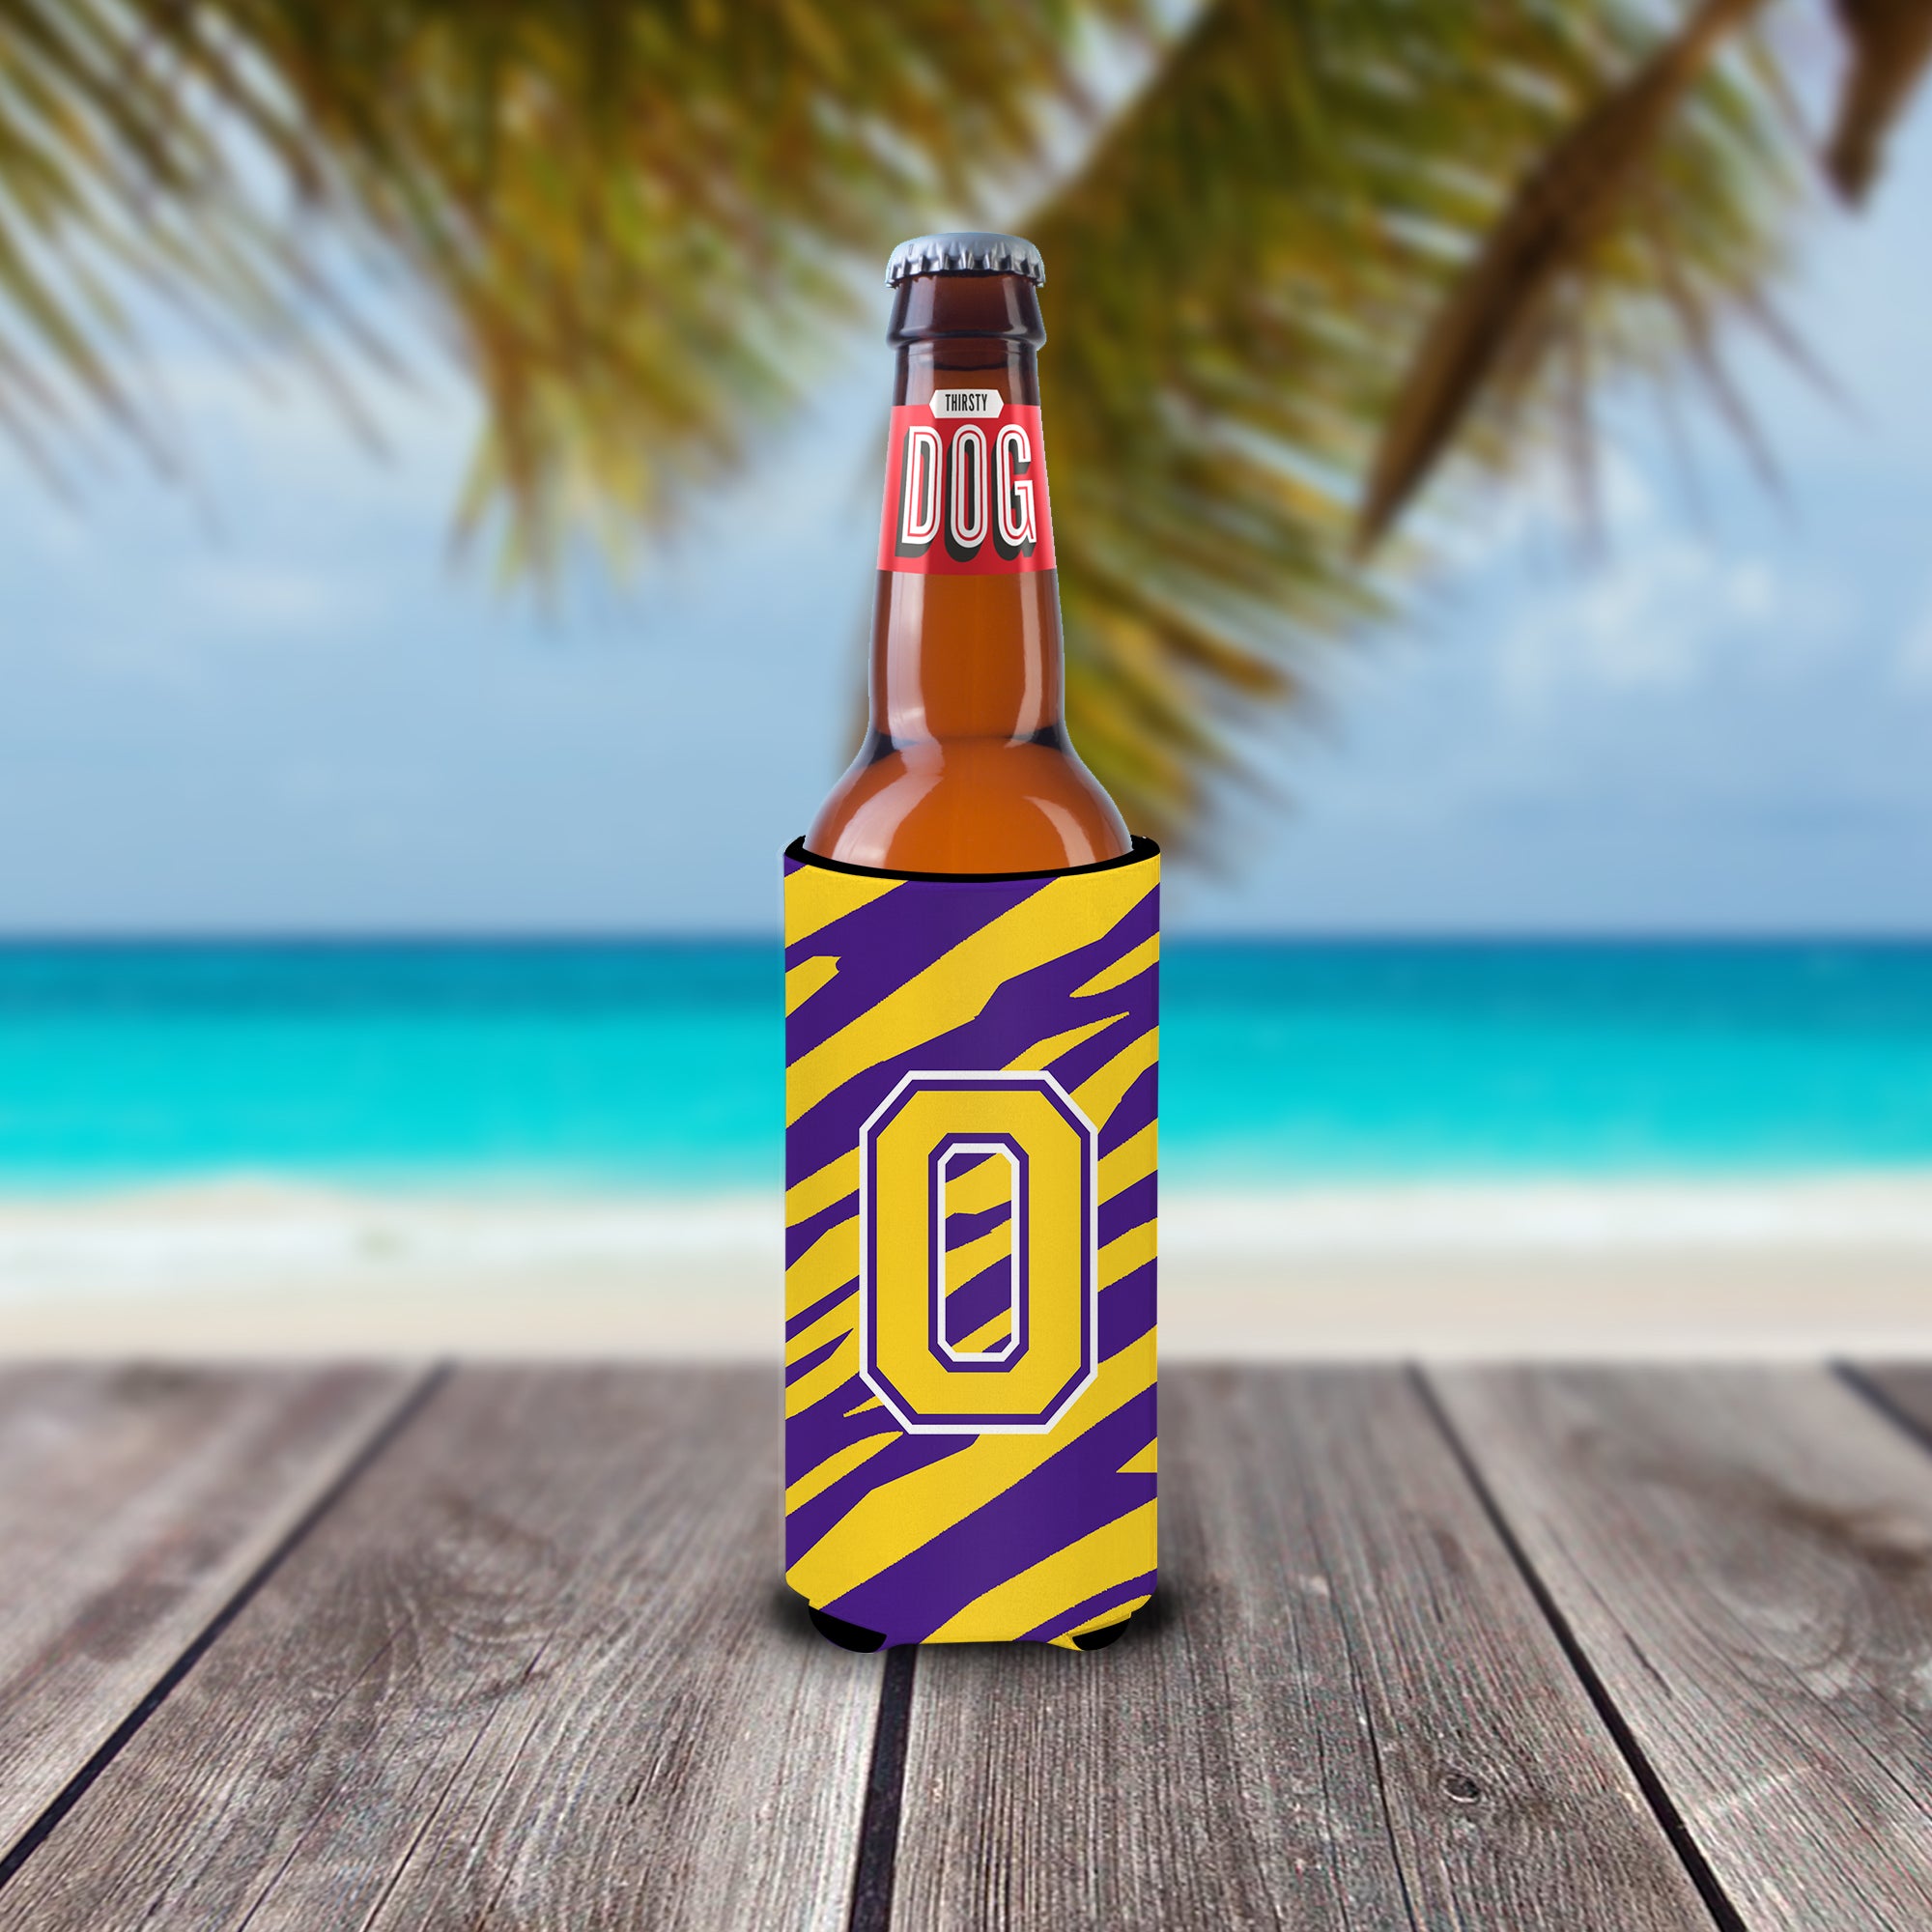 Monogram - Tiger Stripe - Purple Gold  Letter O Ultra Beverage Insulators for slim cans CJ1022-OMUK.